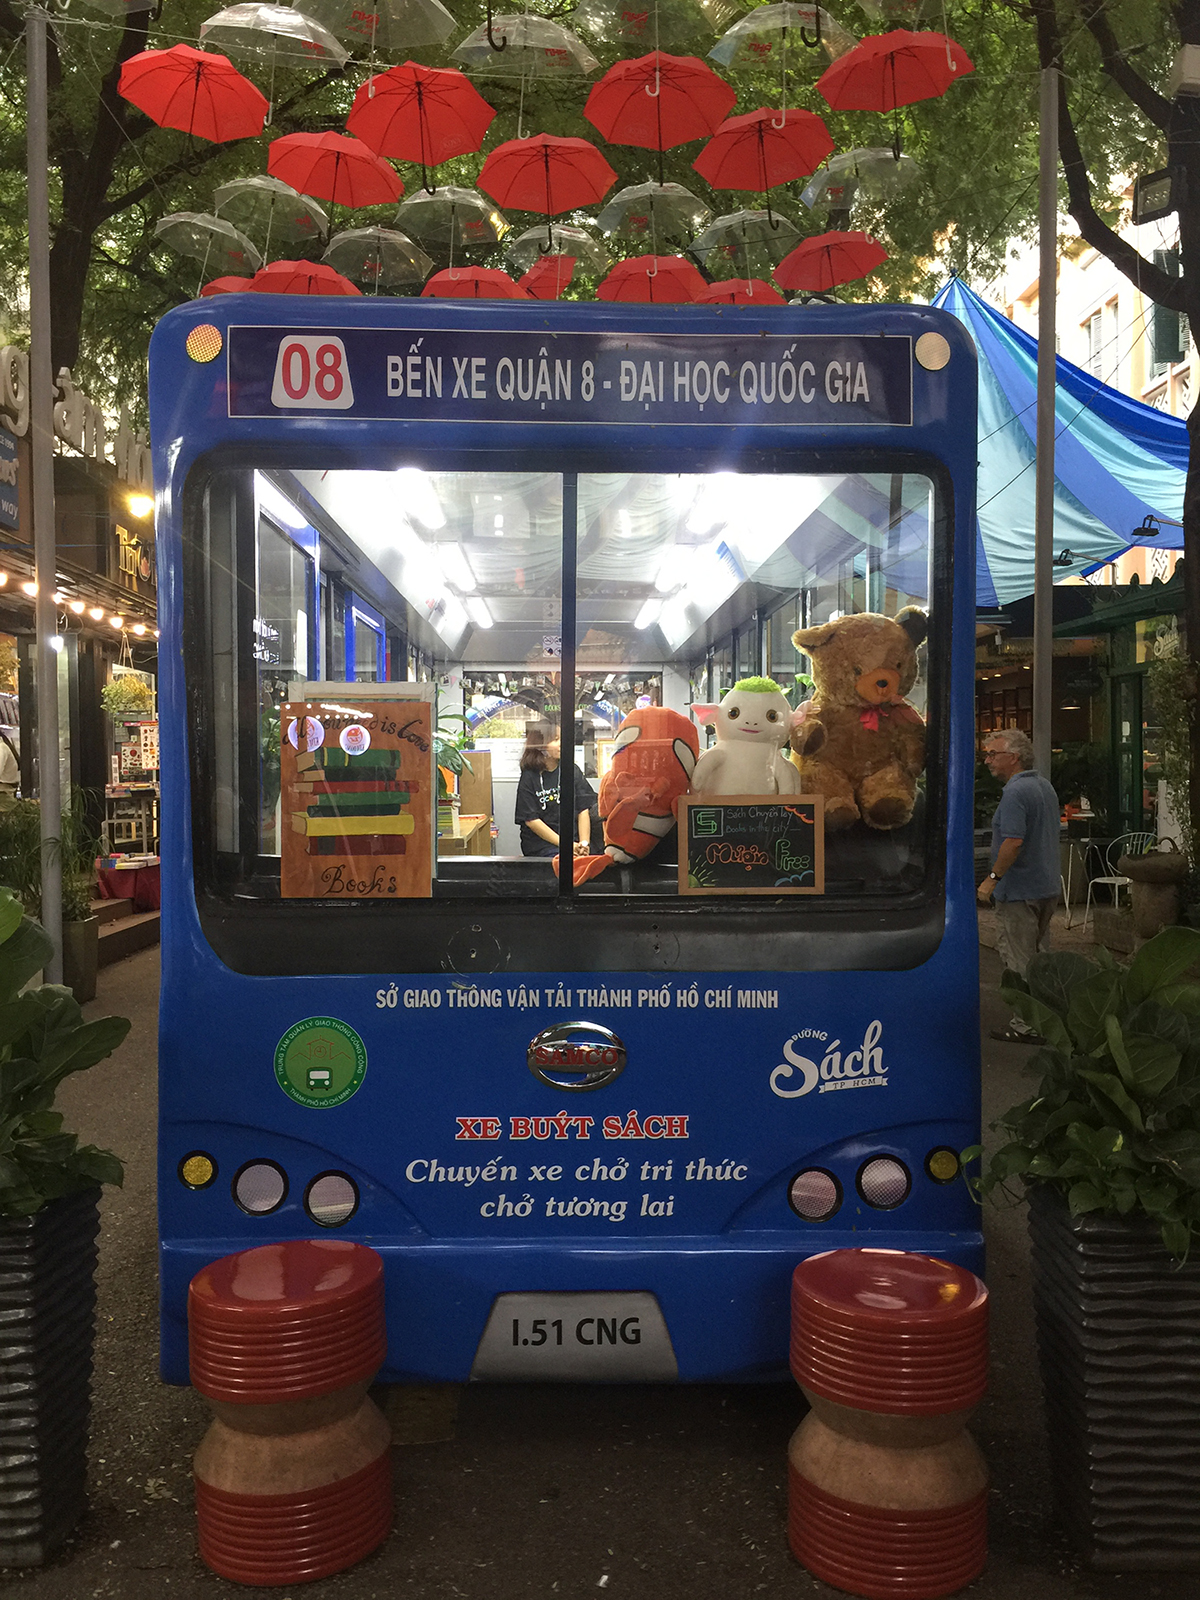 Mô hình xe bus đọc sách với thư viện mini được thiết kế rất đẹp nhưng cũng không có nhiều người vào đọc. 